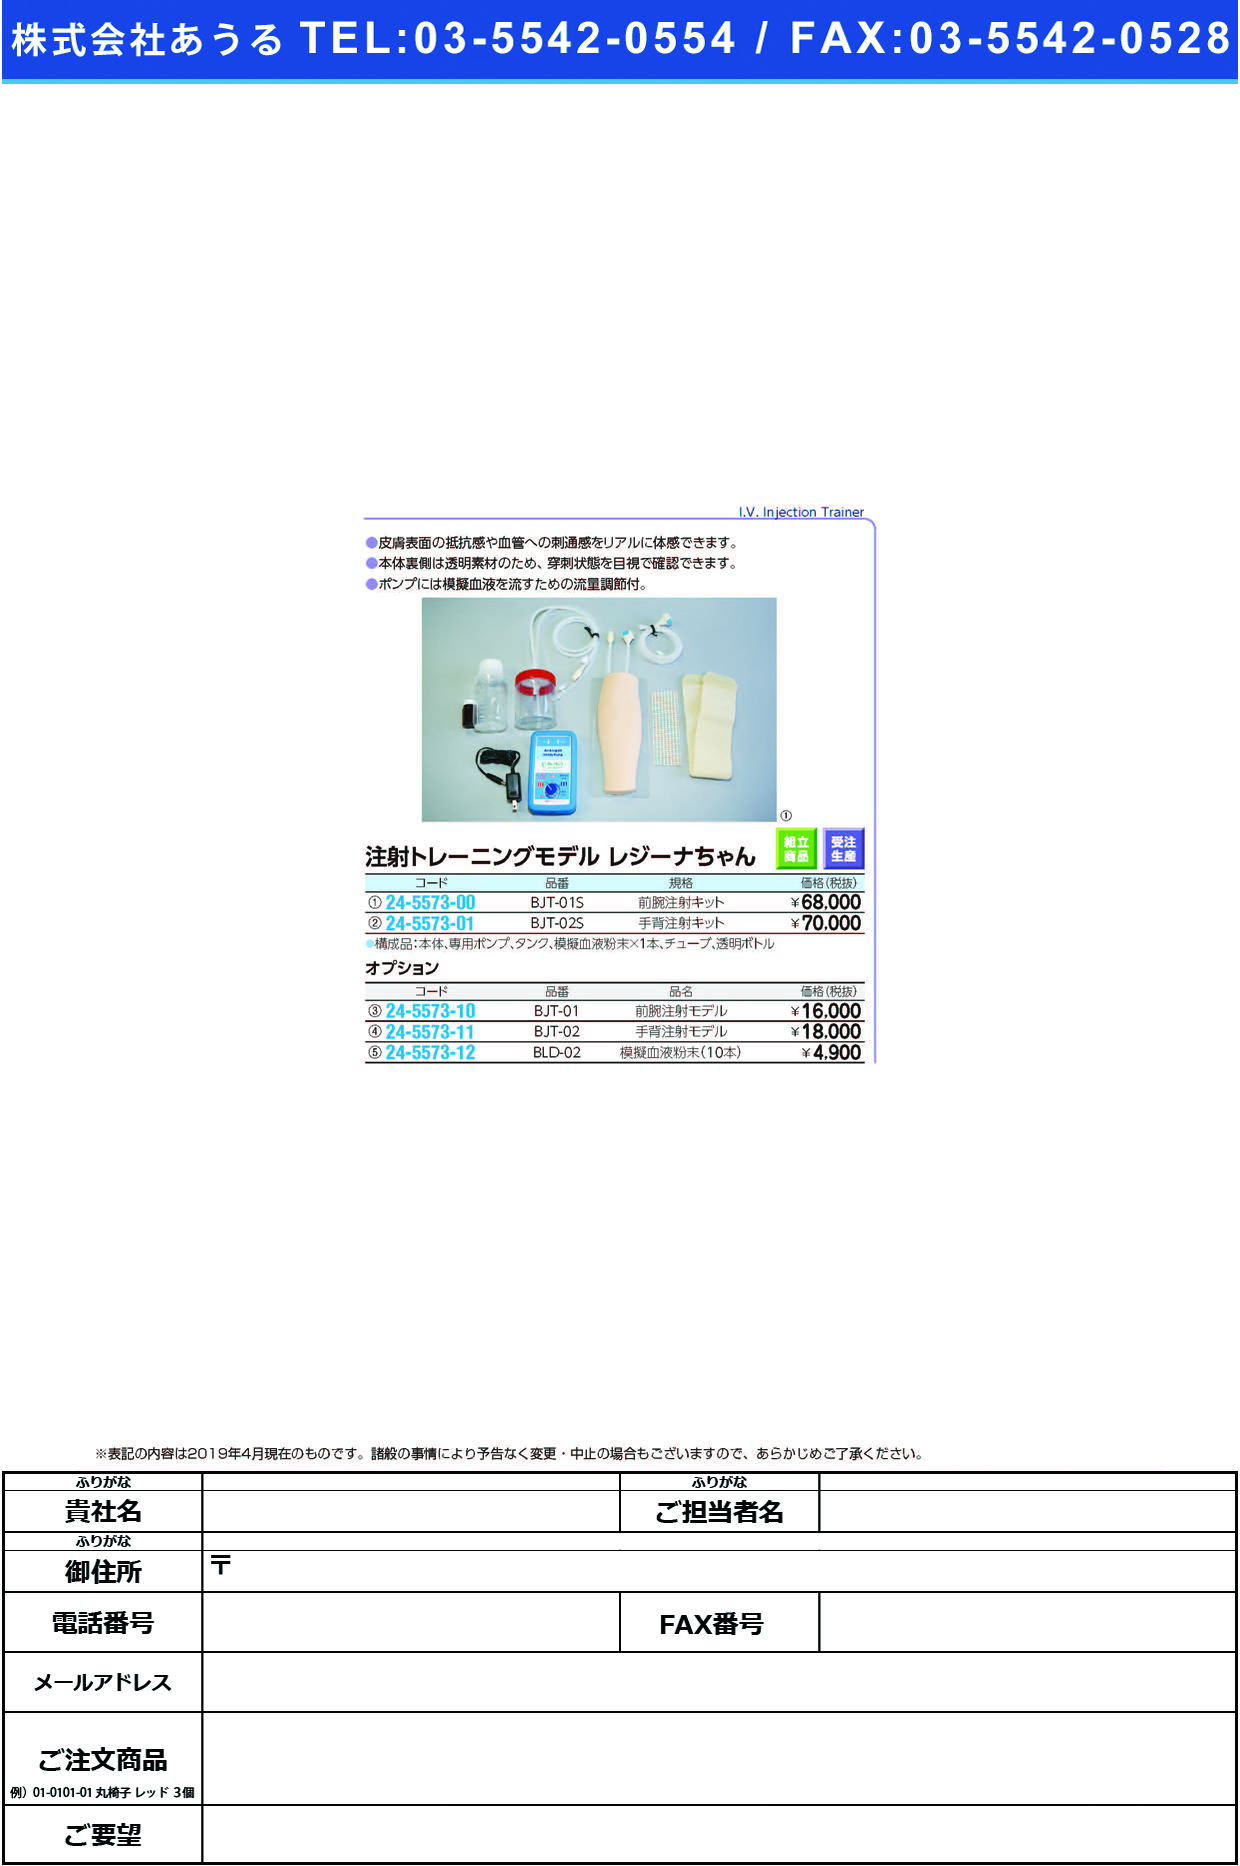 (24-5573-12)模擬血液粉末 BLD-02(10ﾎﾝｲﾘ) ﾓｷﾞｹﾂｴｷﾌﾝﾏﾂ【1箱単位】【2019年カタログ商品】